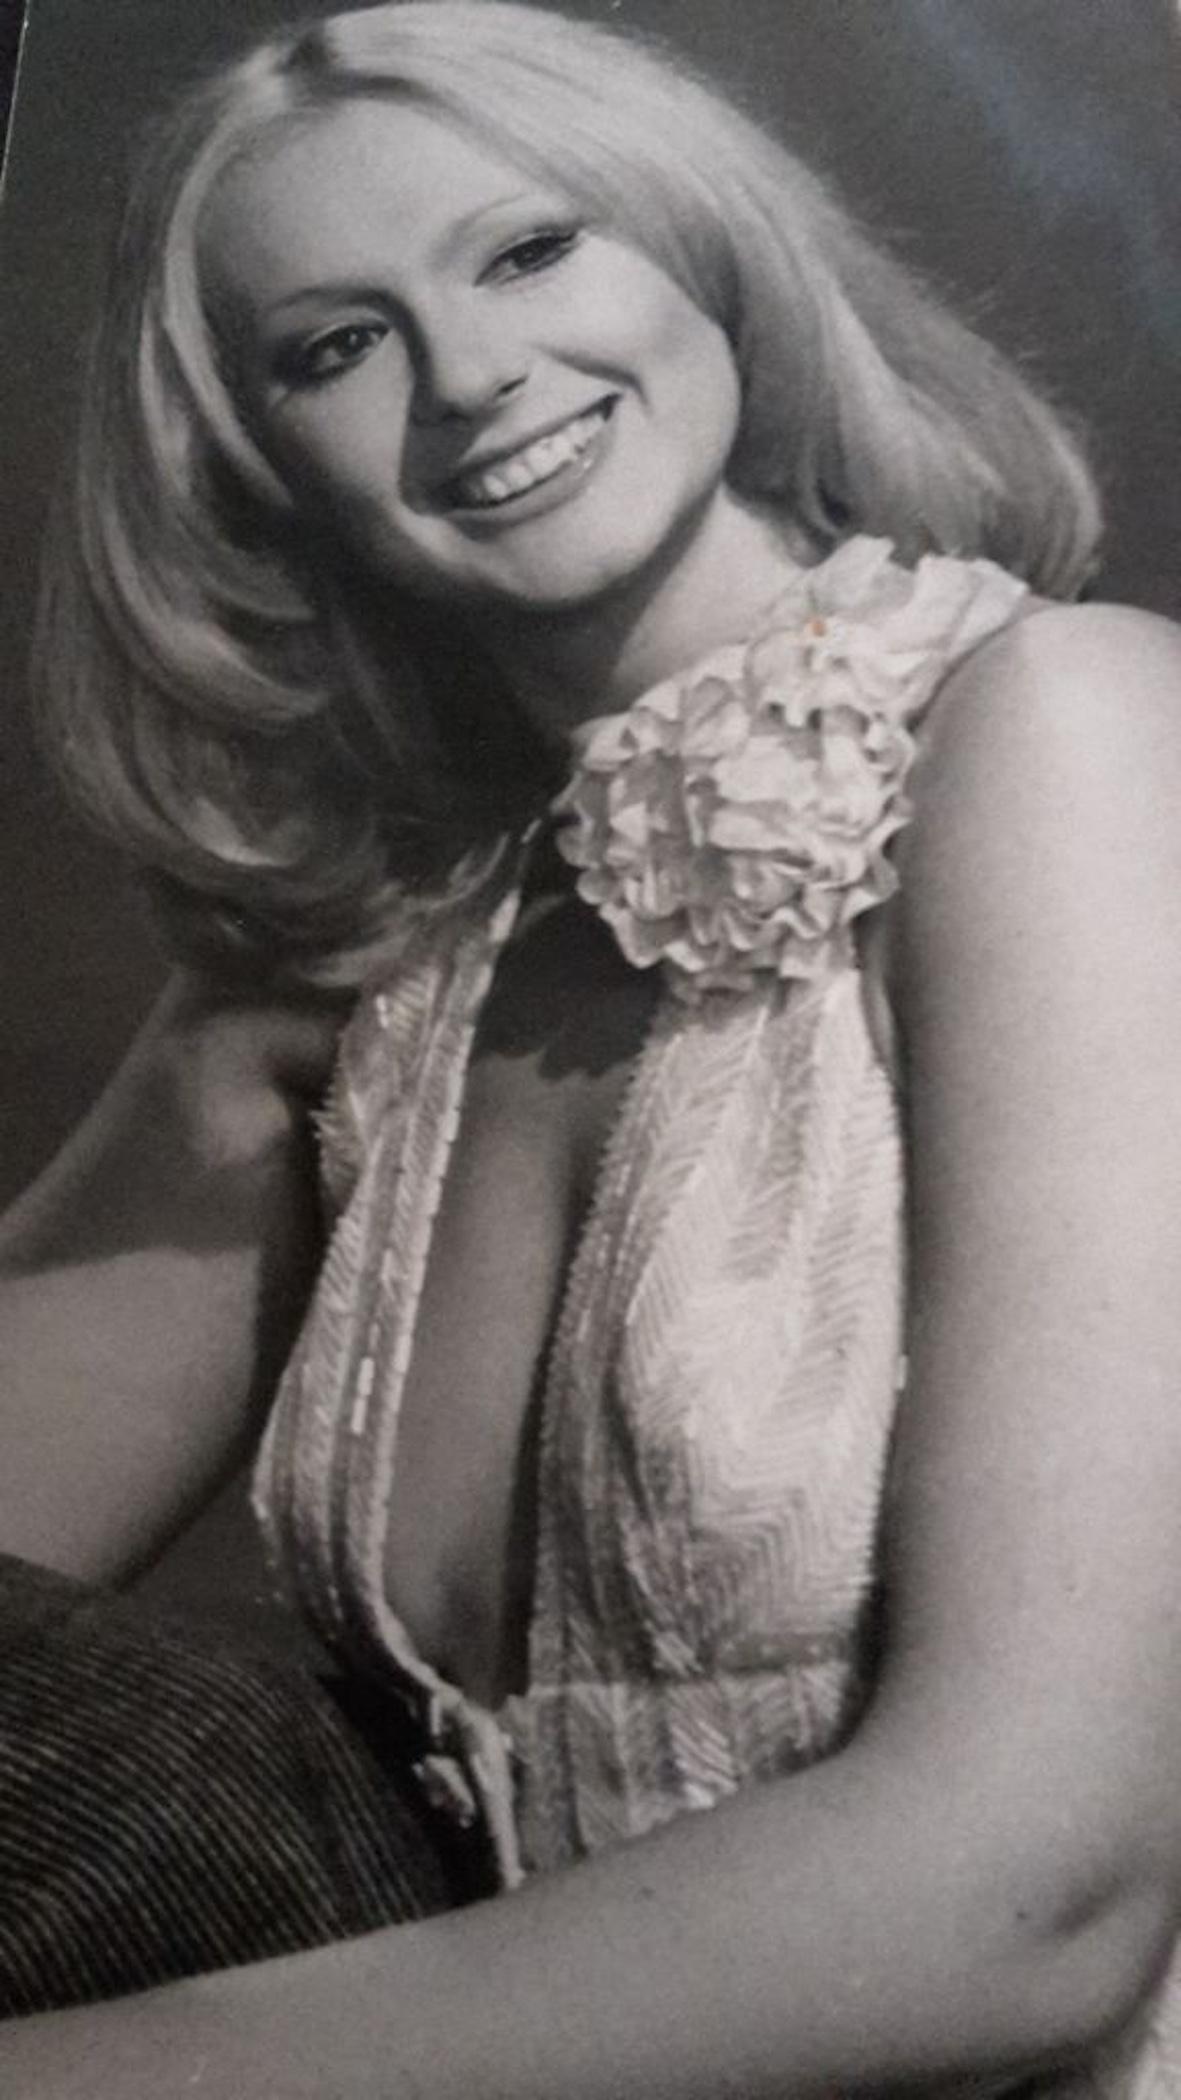 Unknown Figurative Photograph - The Italian Actress and Singer Loretta Goggi -  Photo- 1970s